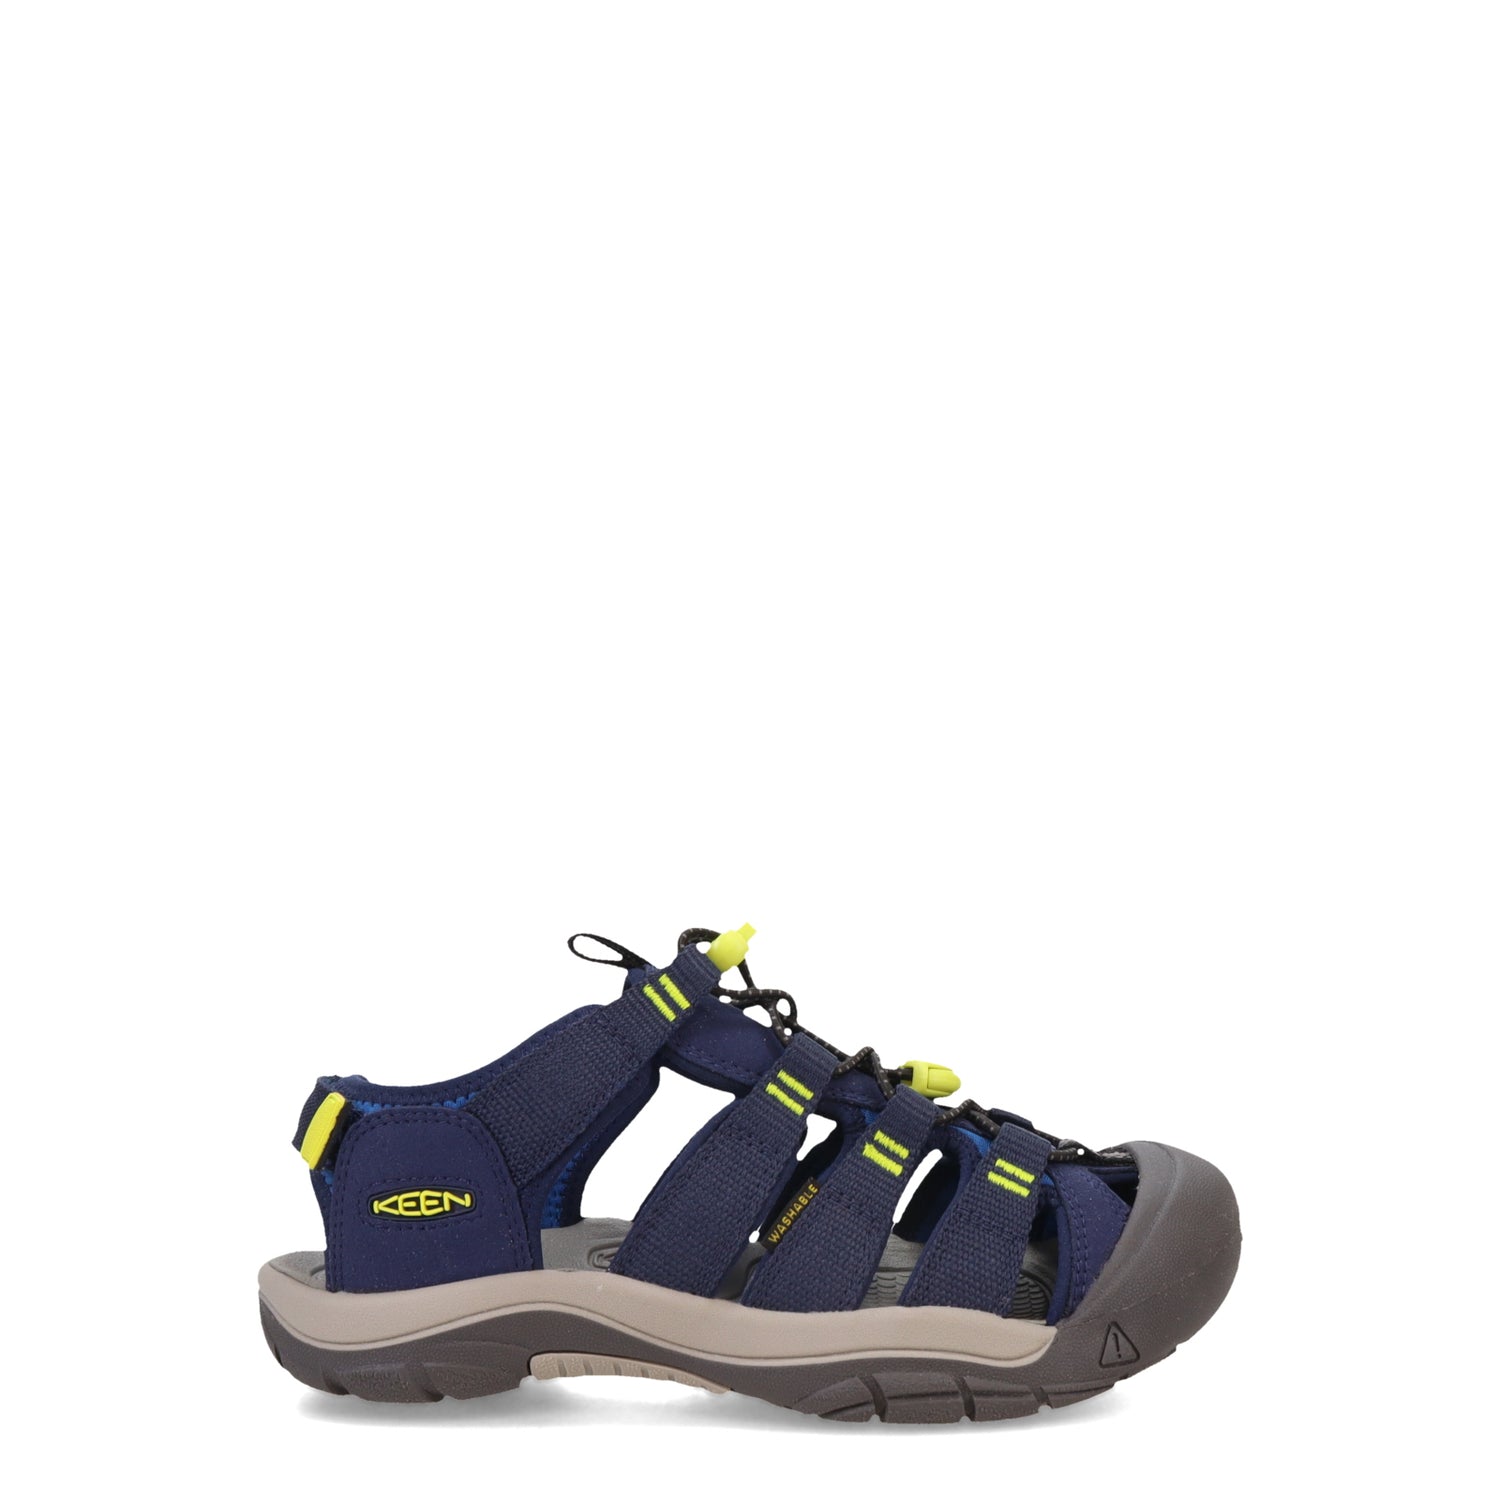 Peltz Shoes  Boy's KEEN Newport H2 Boundless Sandal - Little Kid & Big Kid Naval Academy/Evening Primrose 1028613